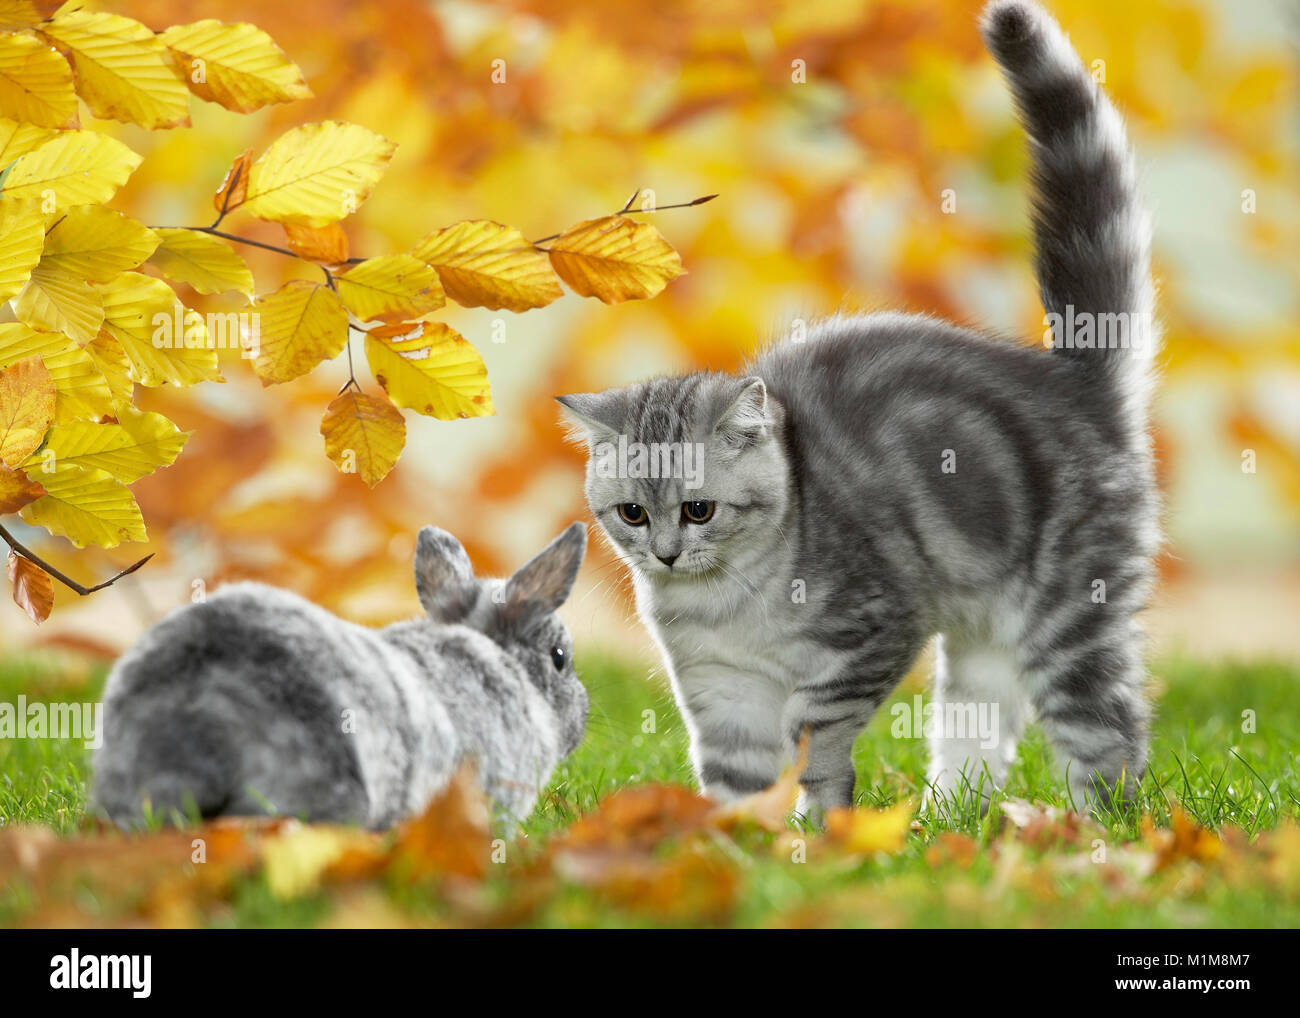 Britisch Kurzhaar Katze und Zwergkaninchen. Tabby kitten und Bunny treffen in einem Garten im Herbst, Deutschland Stockfoto